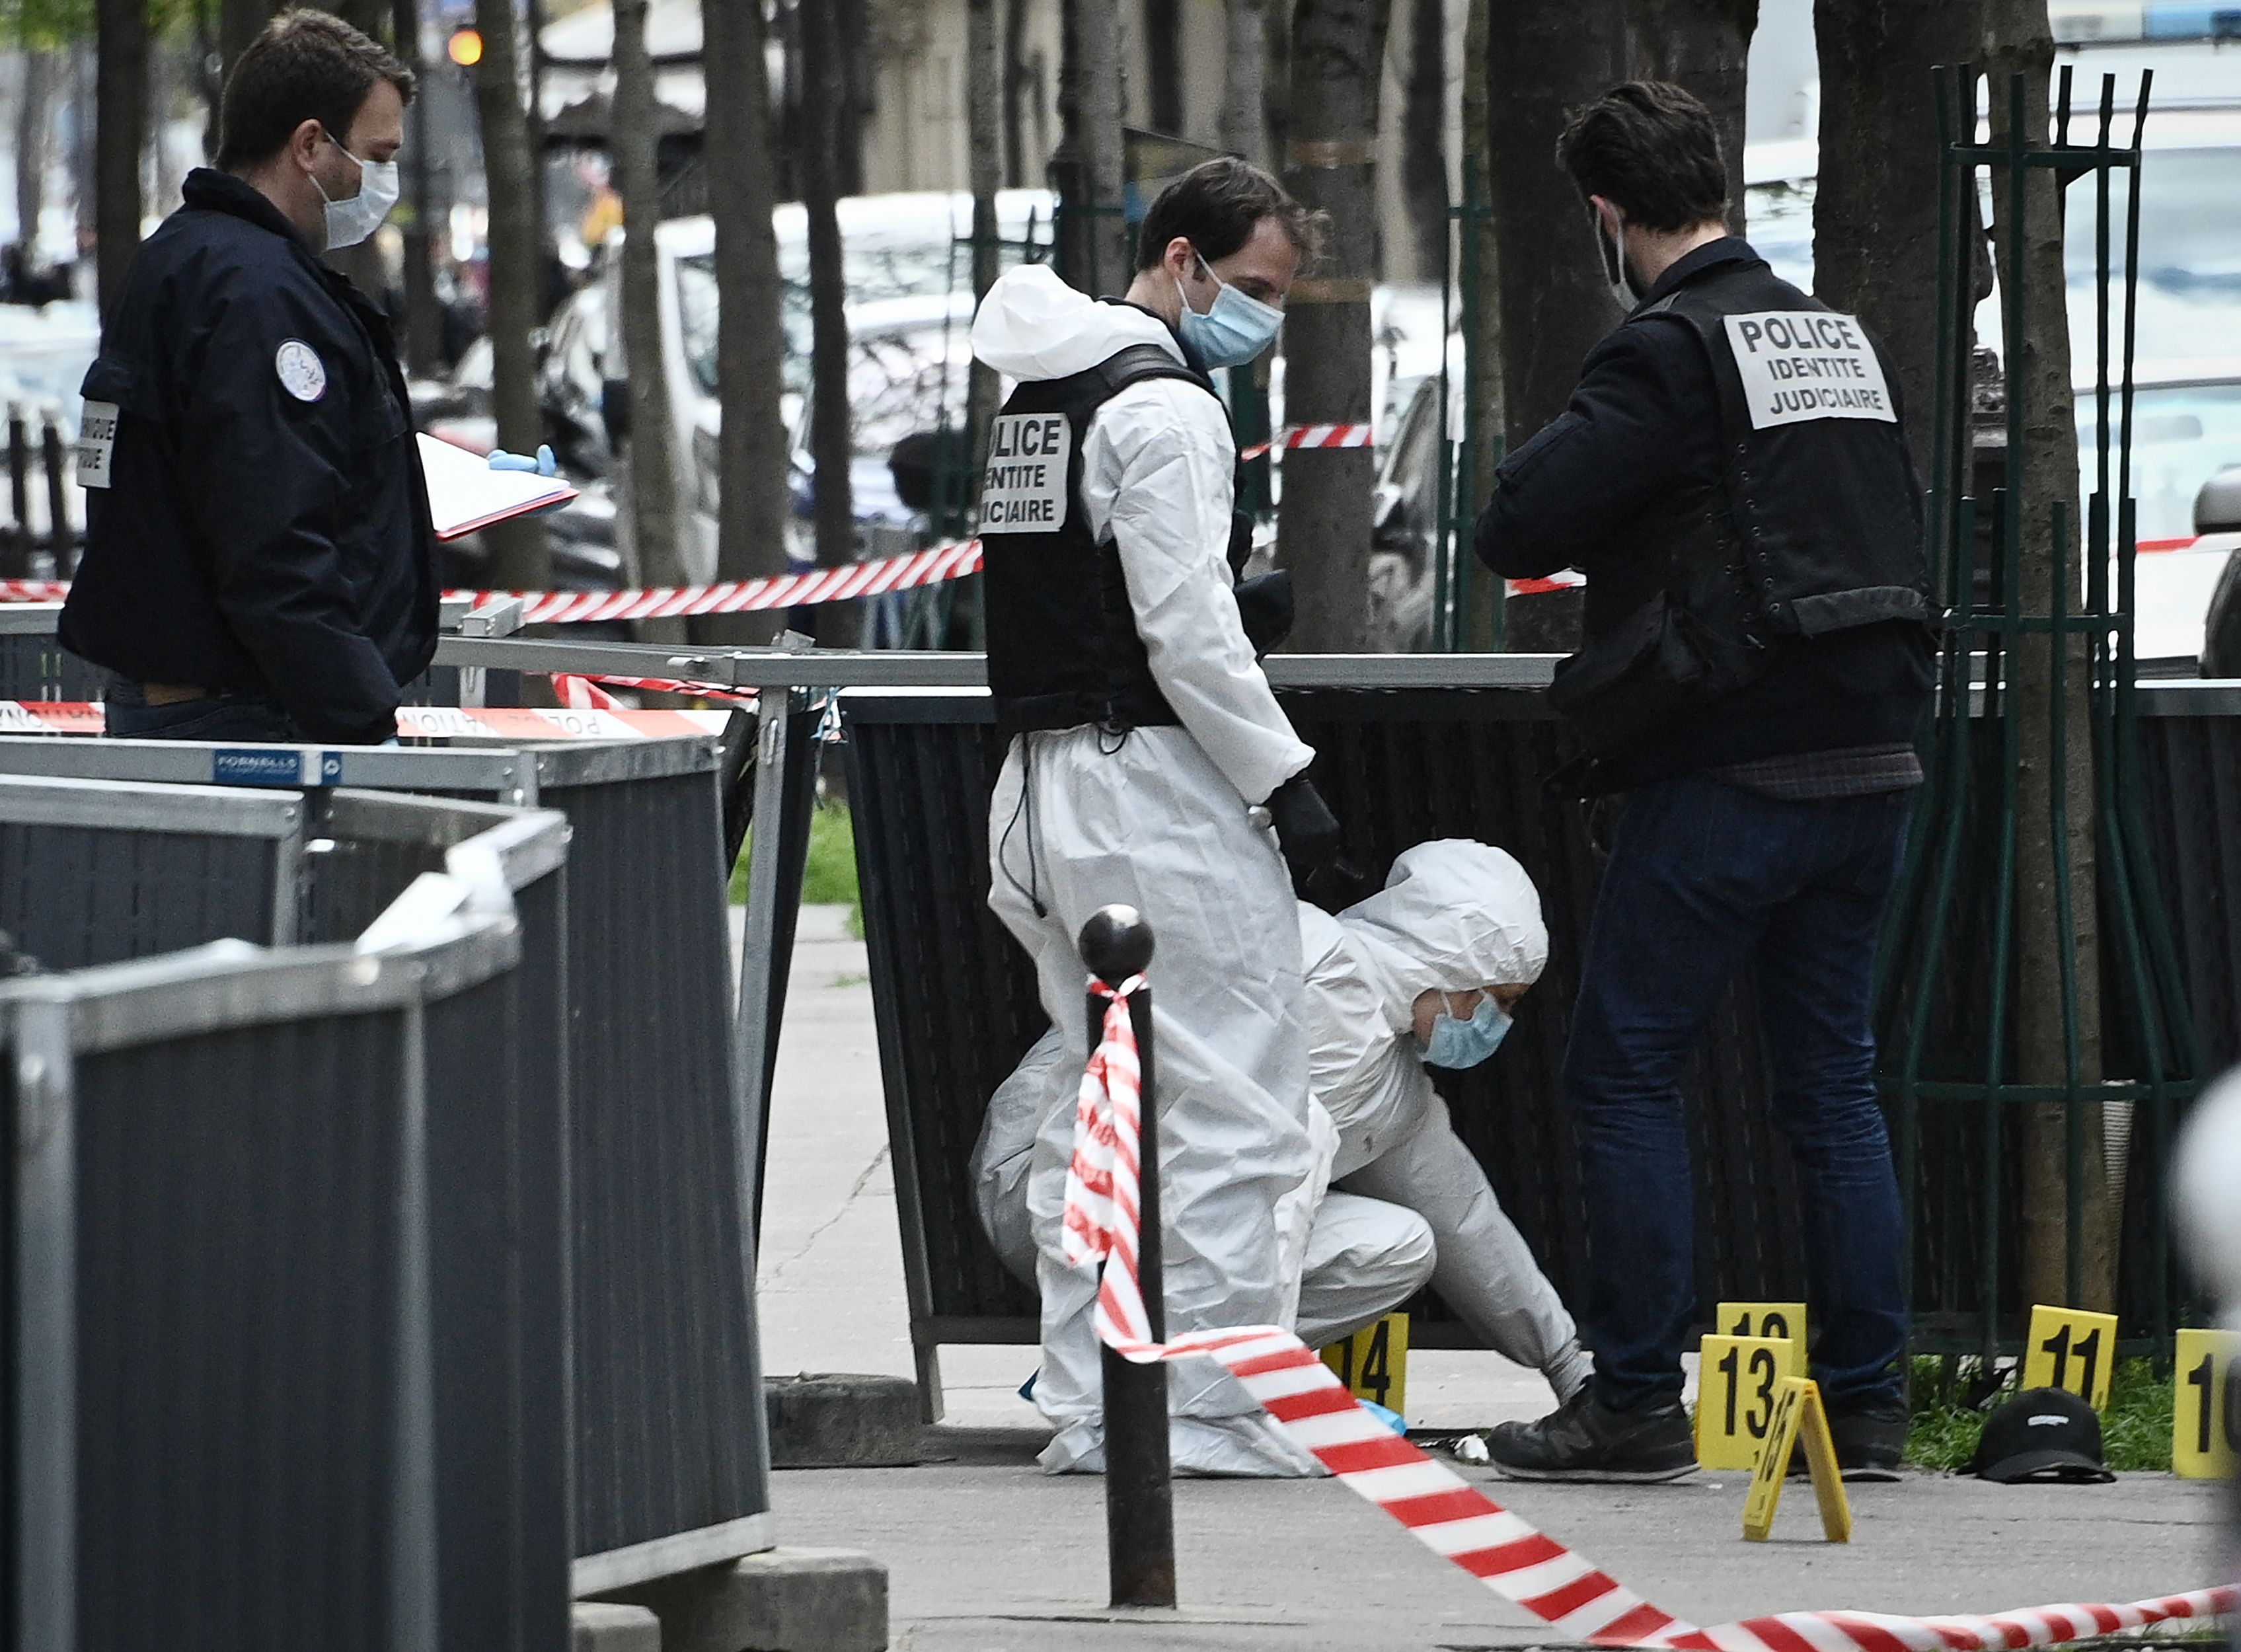 Investigadores forenses de la Policía de Francia buscan evidencias en el lugar donde ocurrió el ataque armado frente al hospital privado Henry Dunant, en donde una persona murió. (Foto Prensa Libre: AFP)